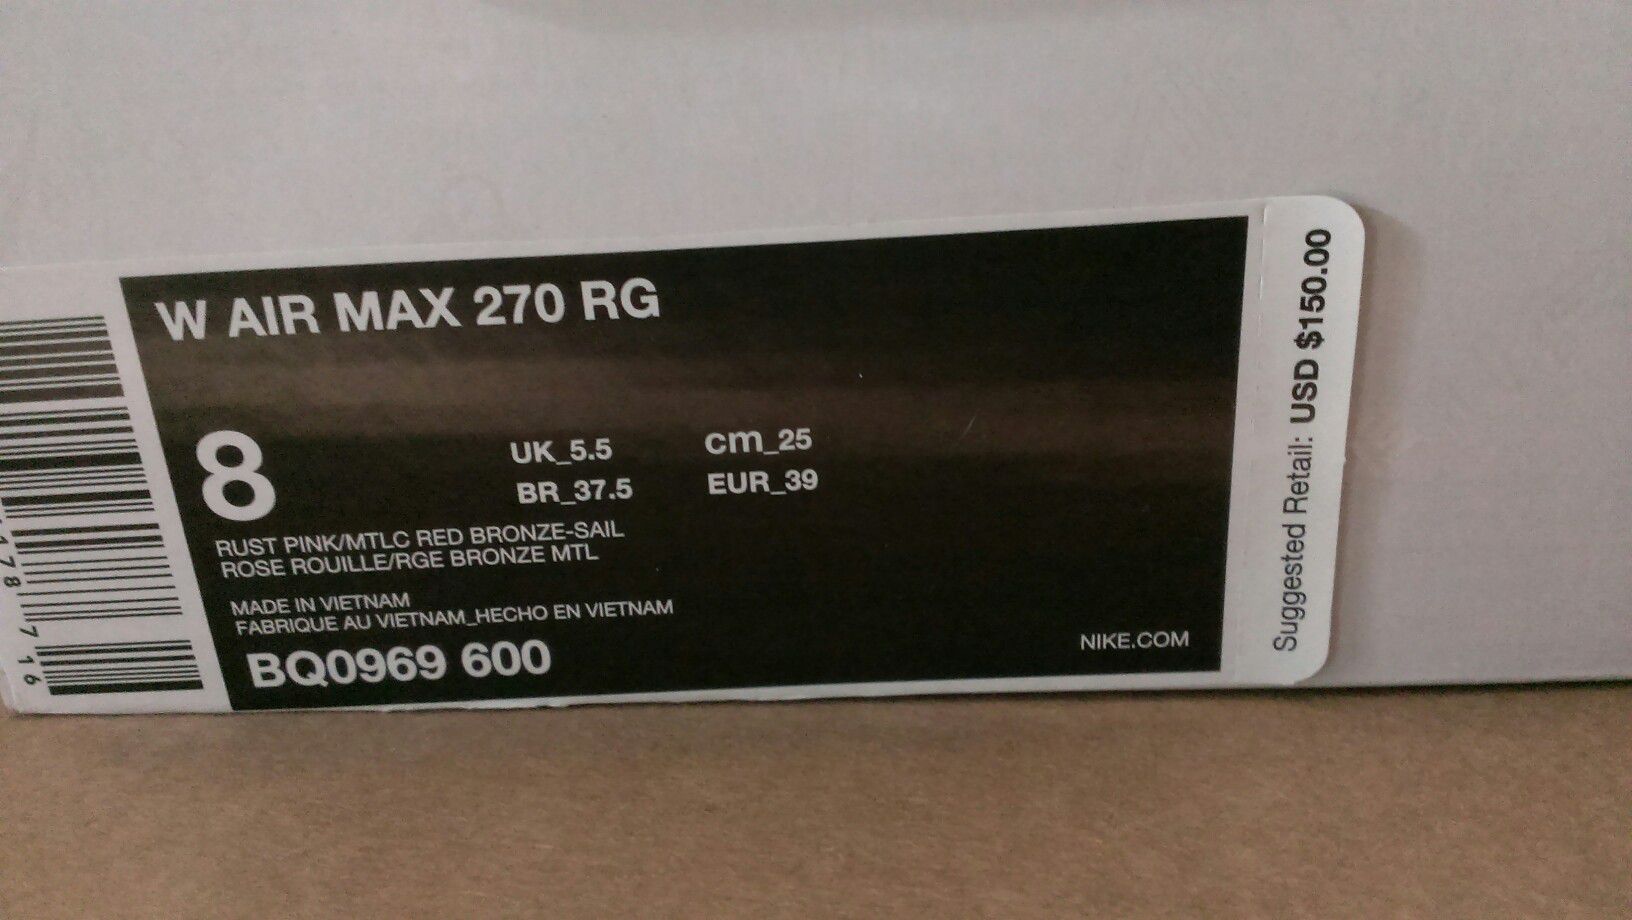 Verandert in Grit Isoleren Nike Air Max 270 Rust Pink Size 8 for Sale in Pasadena, CA - OfferUp